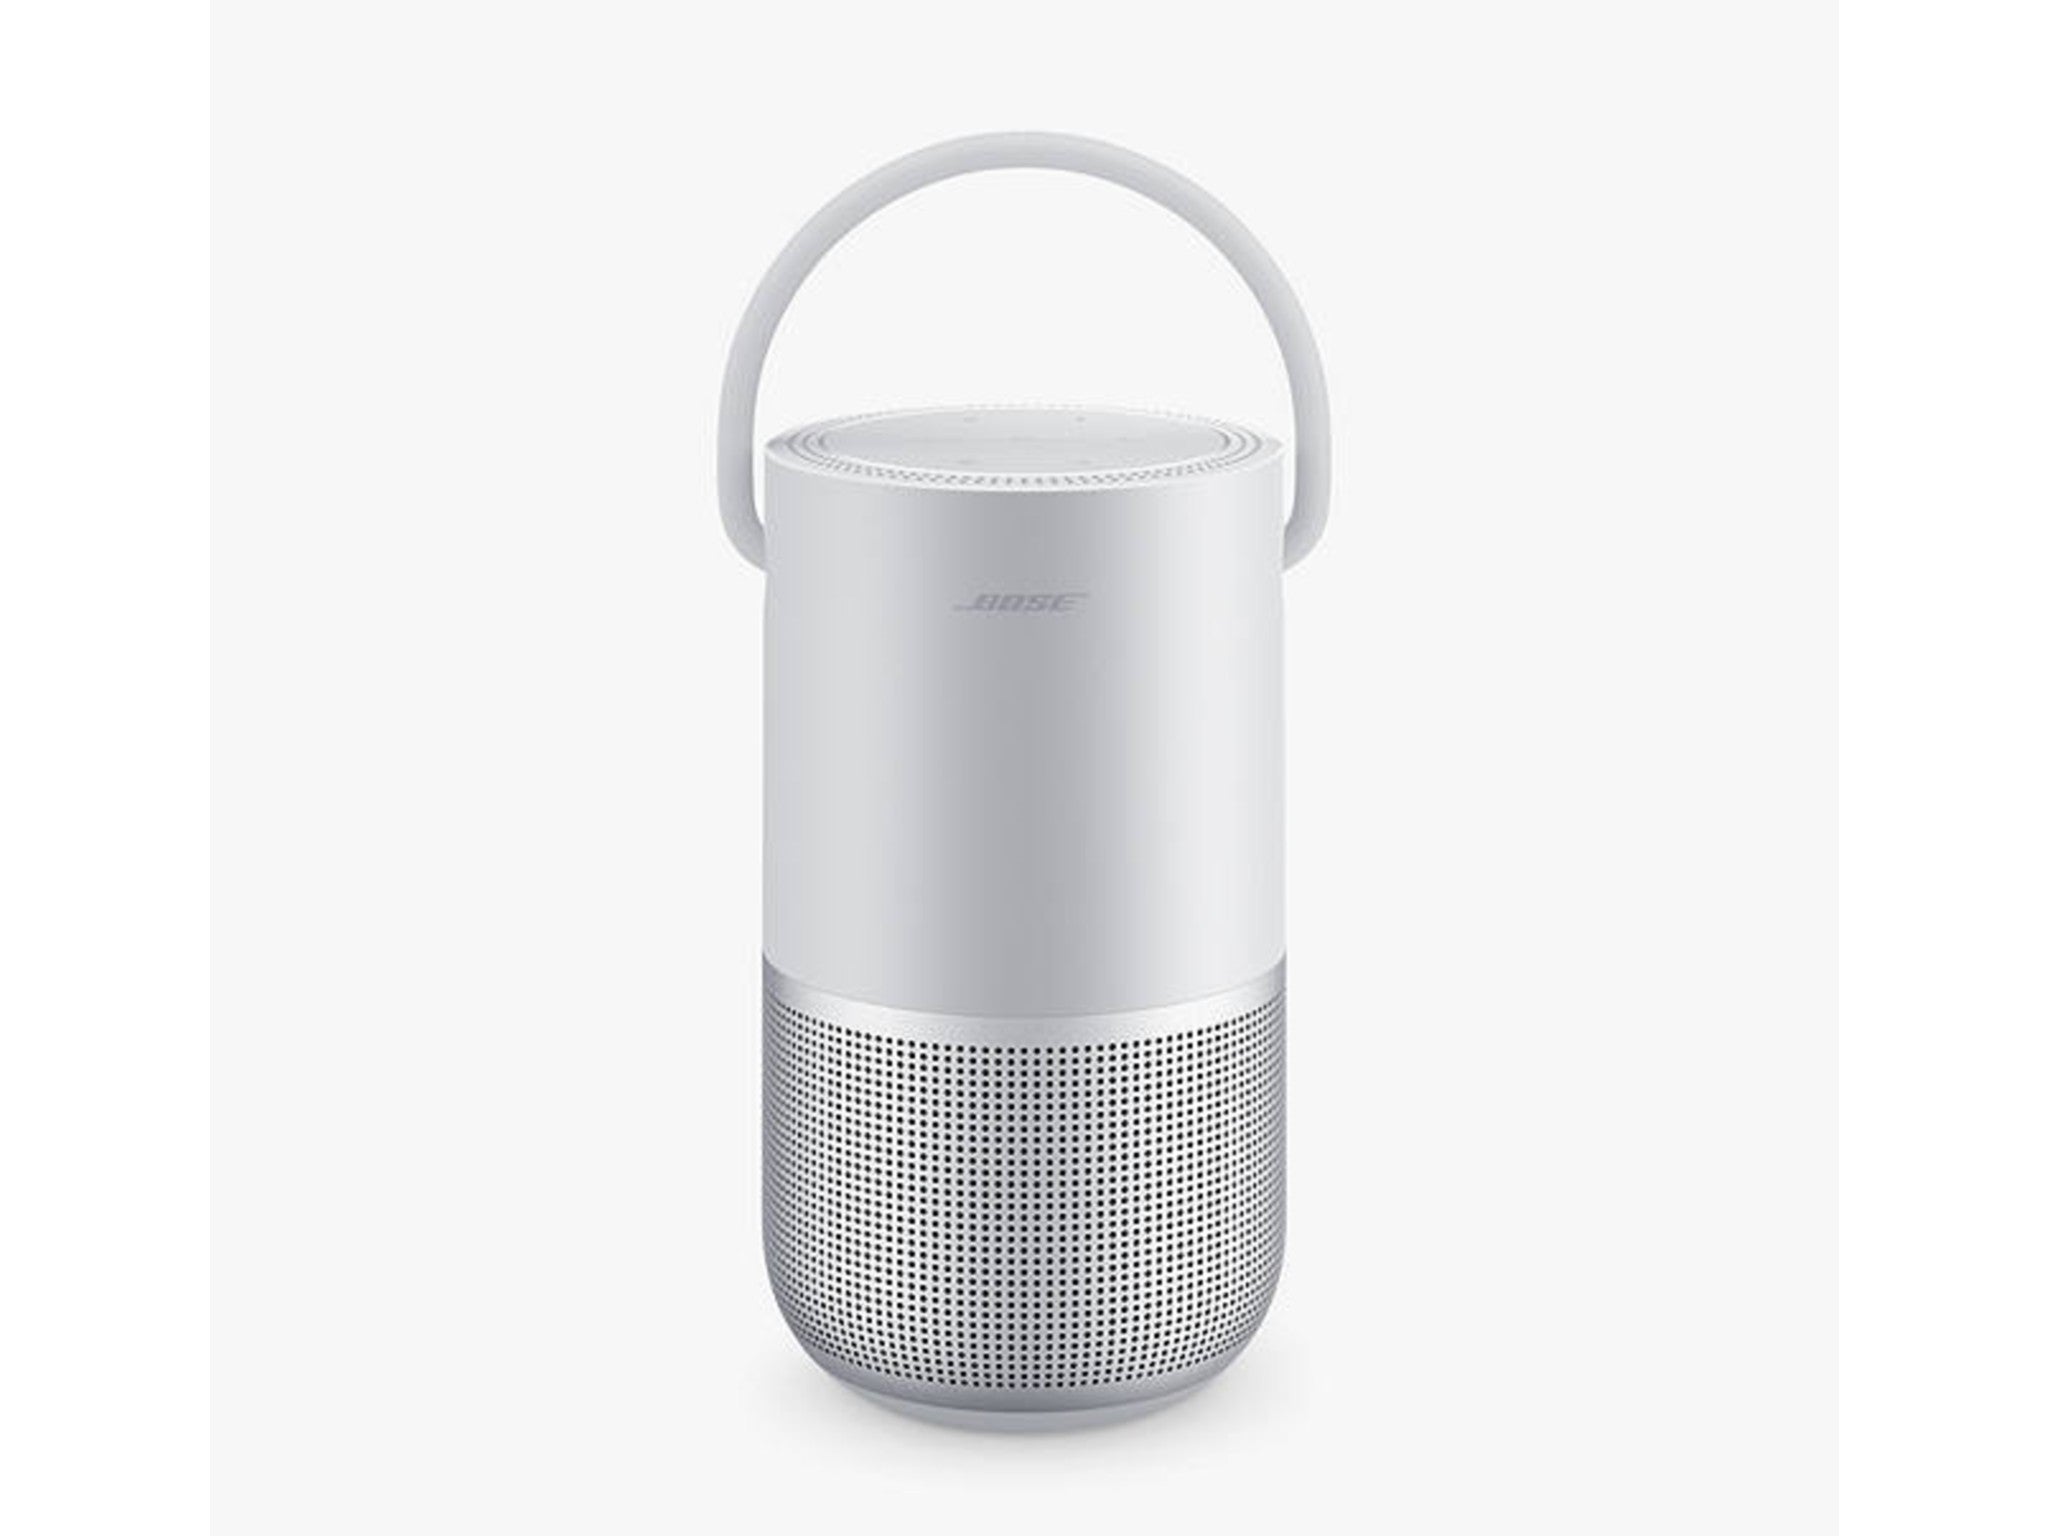 Bose portable smart speaker Silver indybest